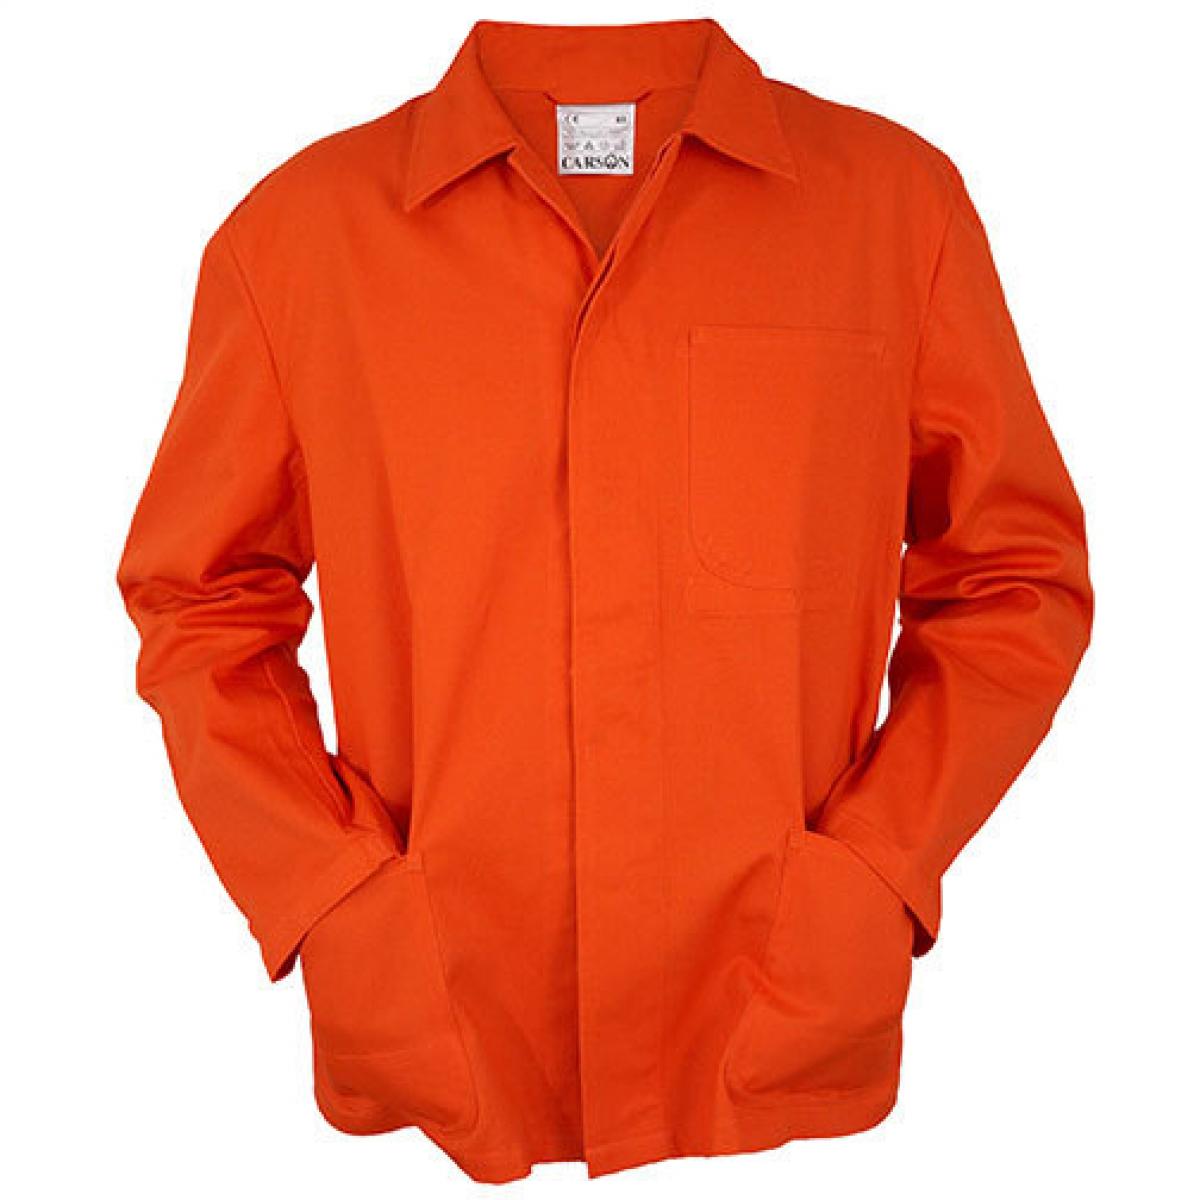 Hersteller: Carson Classic Workwear Herstellernummer: KTH709J Artikelbezeichnung: Herren Classic Long Work Jacket bis 60 Grad waschbar Farbe: Orange